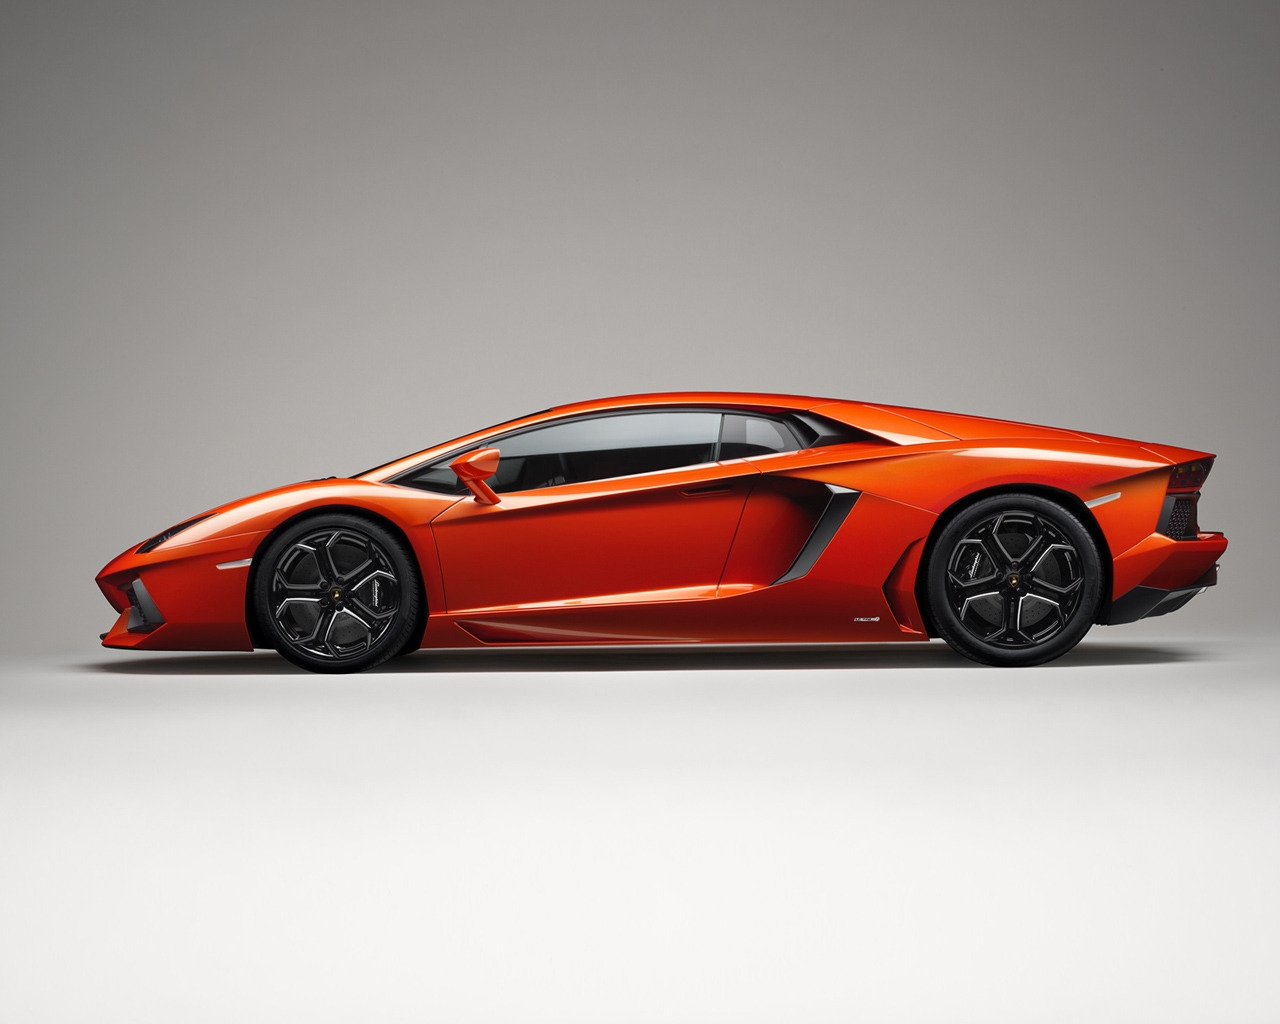 Lamborghini Aventador Side for 1280 x 1024 resolution